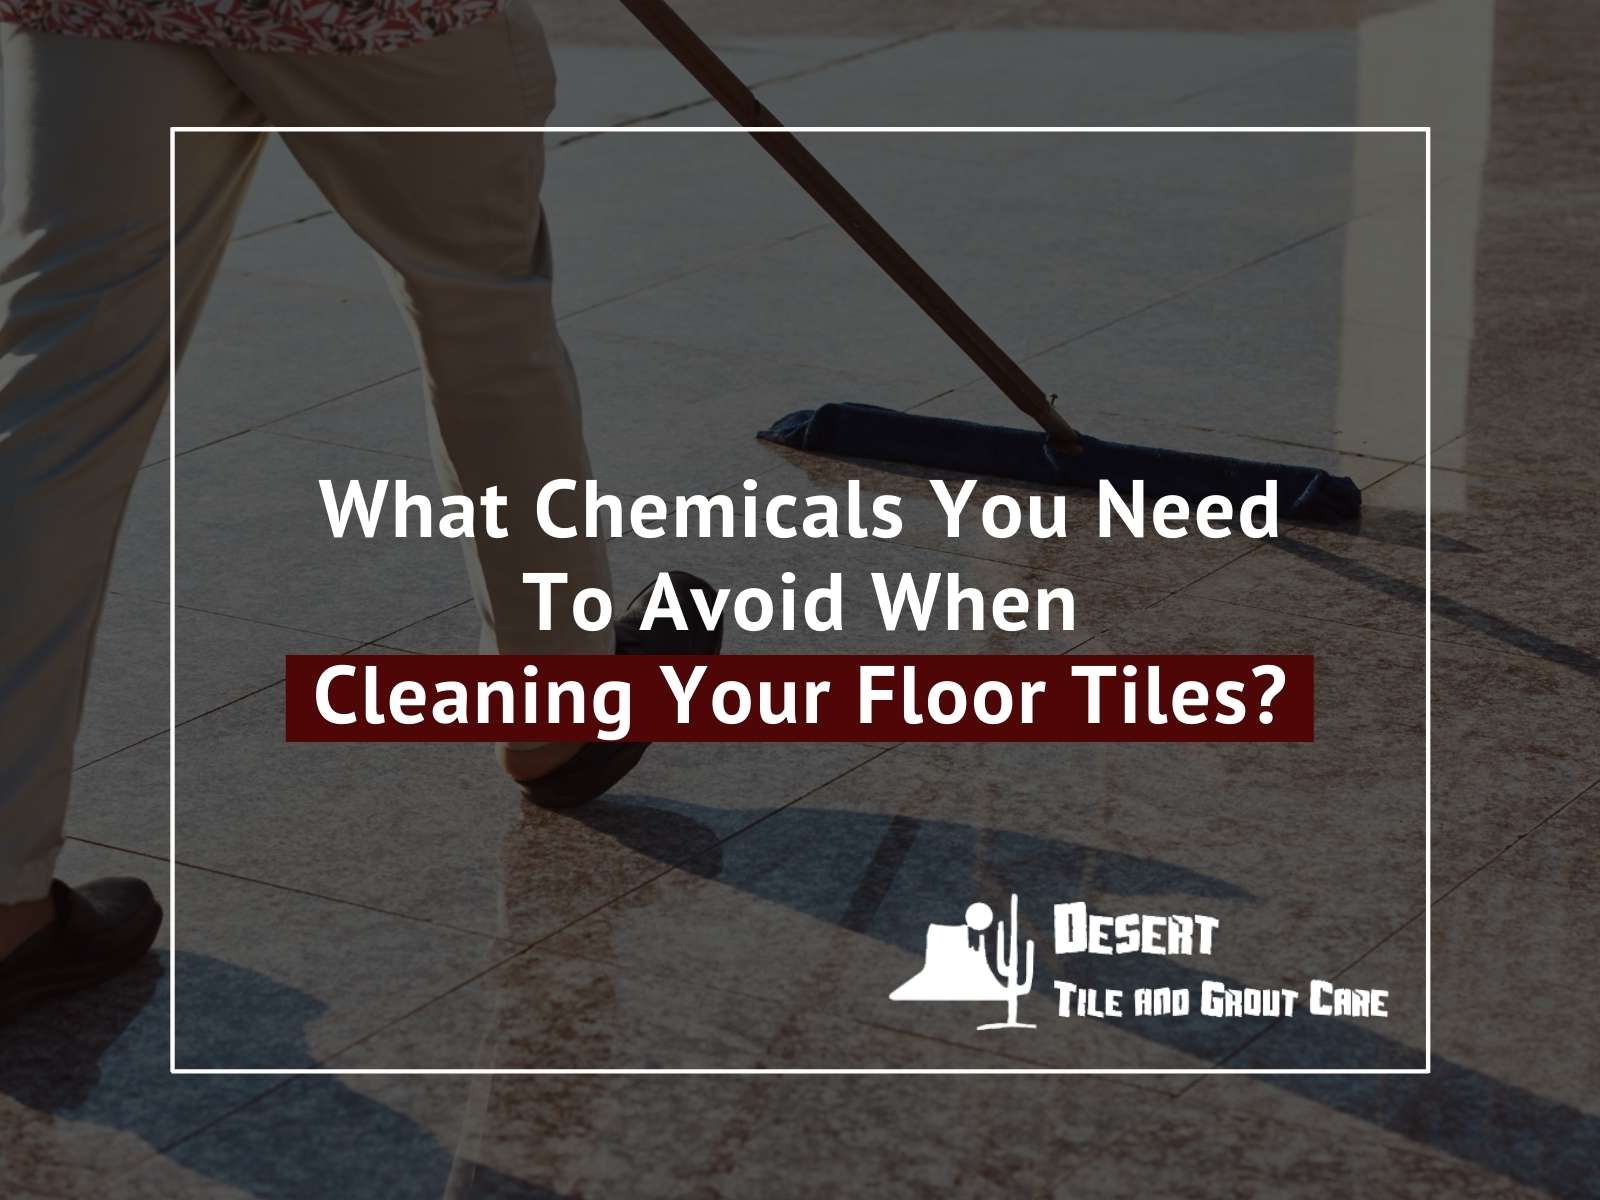 Cleaning floor tiles in Arizona